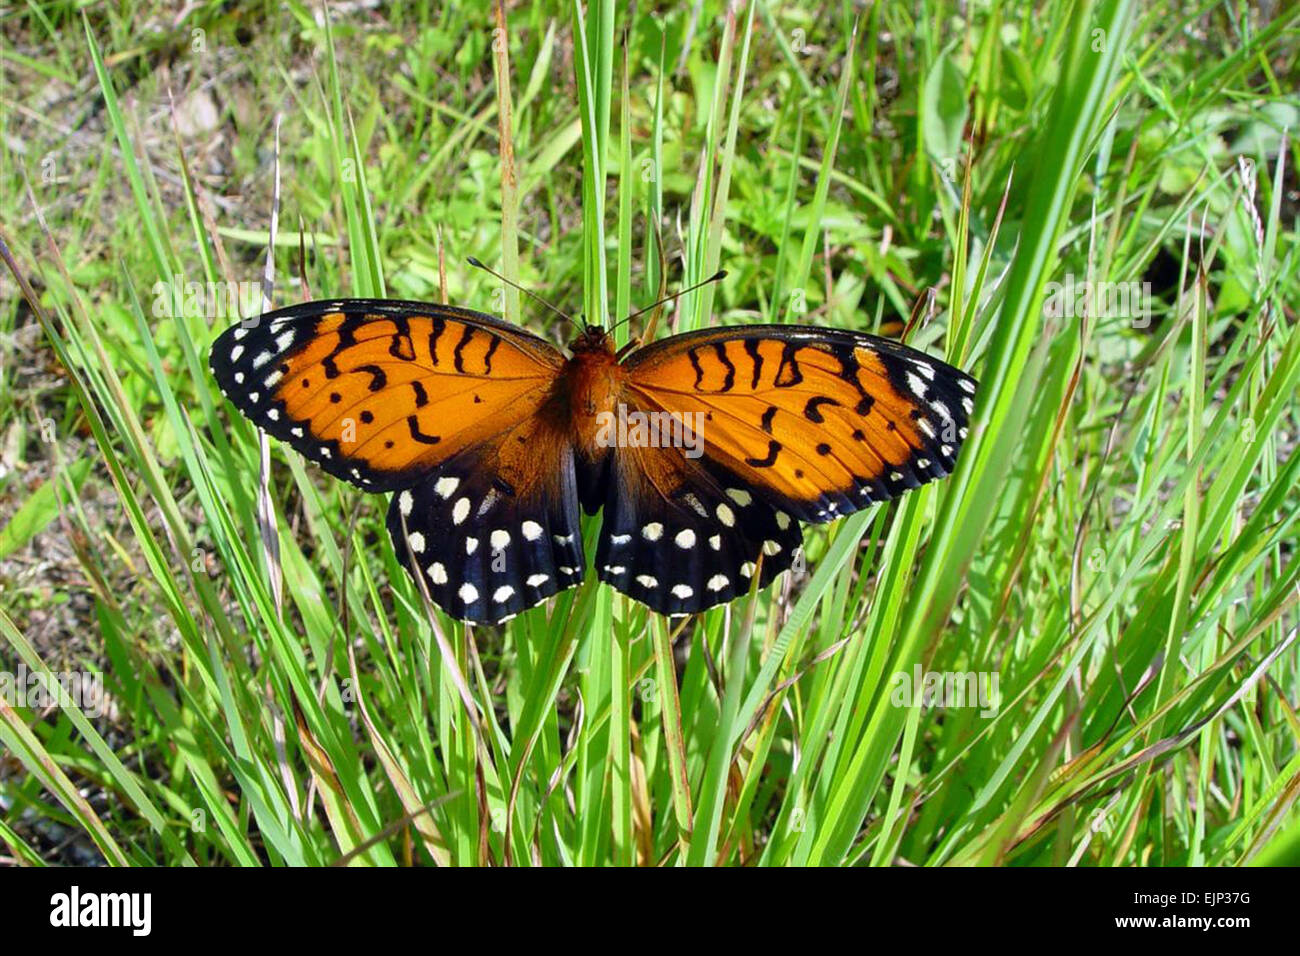 La regal fritillary papillon est une espèce en voie de disparition protégée sur Fort Indiantown Gap, Pennsylvanie Texas Army National Guard voir : /-news/2008/05/13/9121-fort-indiantown-gap-pr... /-News/2008/05/13/9121-fort-indiantown-gap-fournit-refuge-pour-rare-en-papillon-formation-soldats/ Banque D'Images